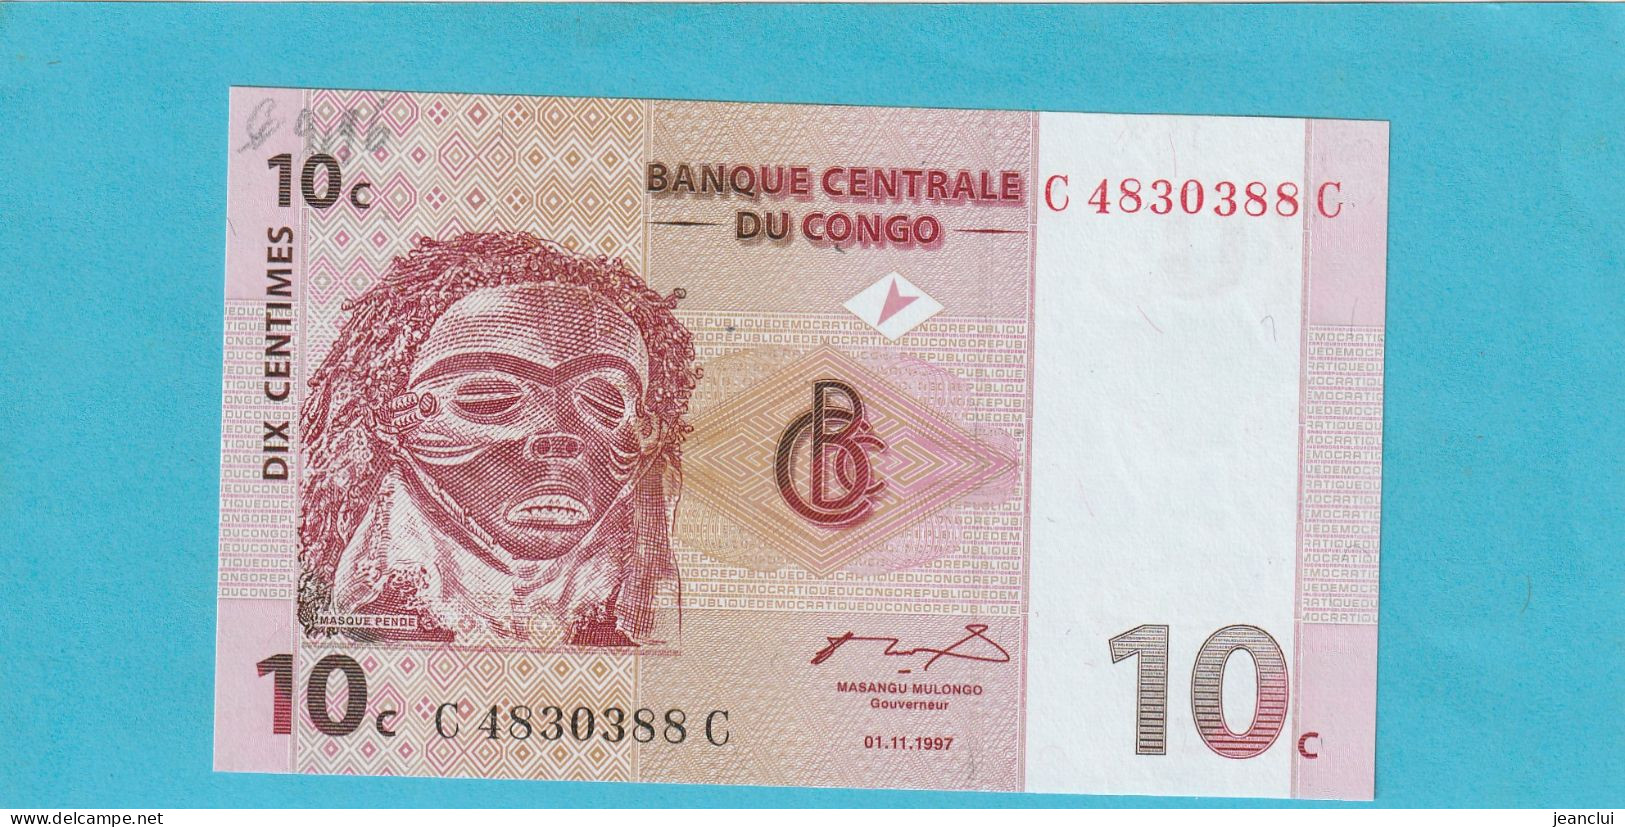 BANQUE CENTRALE DU CONGO  .  10 CENTIMES  .  01-11-1997  .  N°  C 4830388 C   .  BILLET EN TRES BEL ETAT  .  2 SCANNES - République Démocratique Du Congo & Zaïre